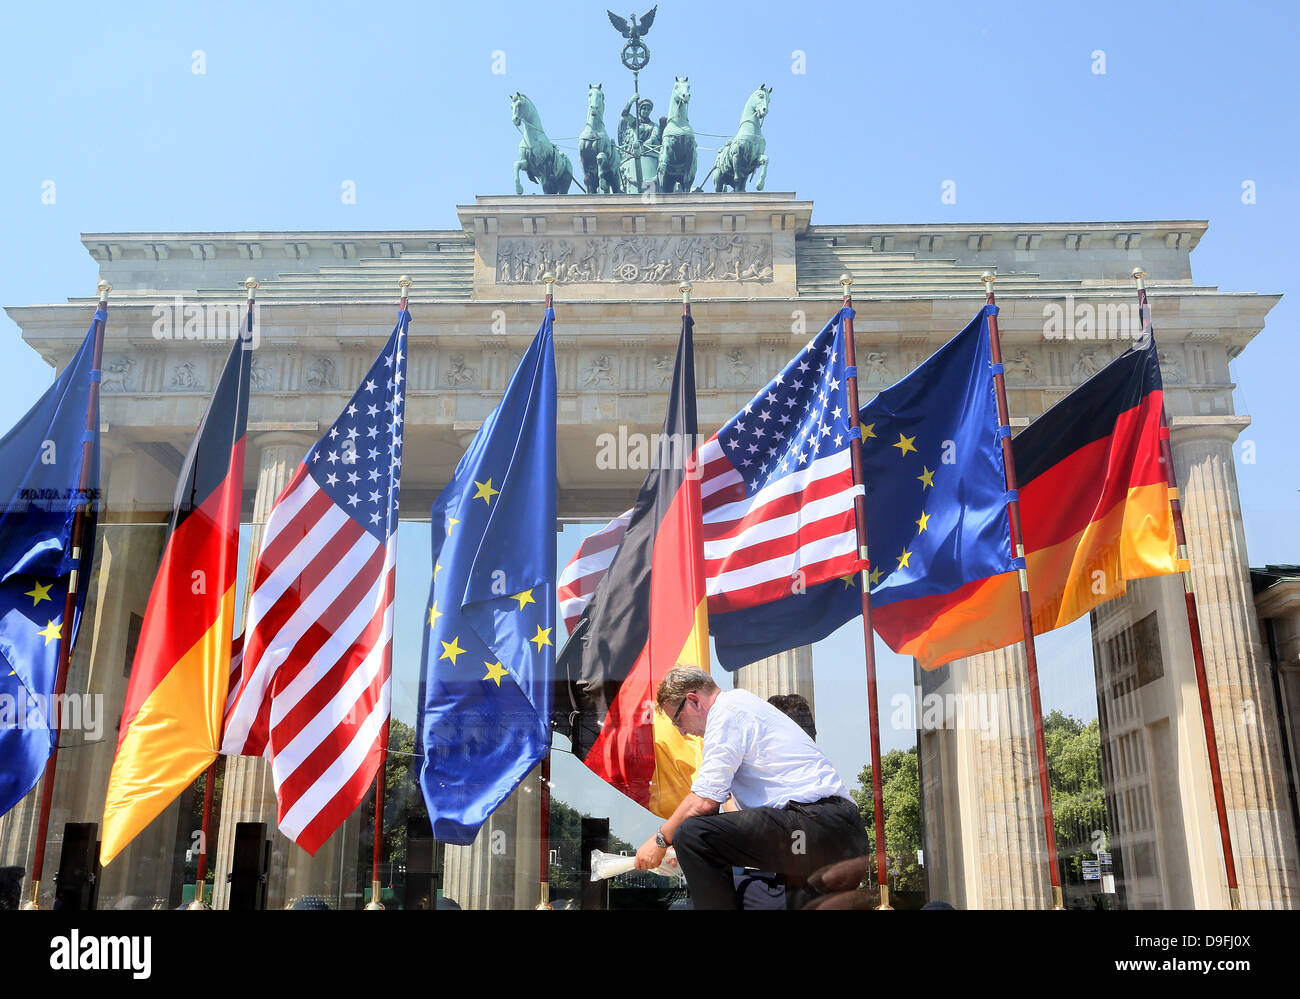 Flaggen der USA, Deutschland und Europa (EU) sind vor dem Brandenburger Tor vor der Rede von uns Präsident Barak Obama in Berlin, Deutschland 19 gebaut. Juni 2013. Foto: Stephanie Pilick/Dpa/Alamy Live News/Dpa/Alamy Live News Stockfoto